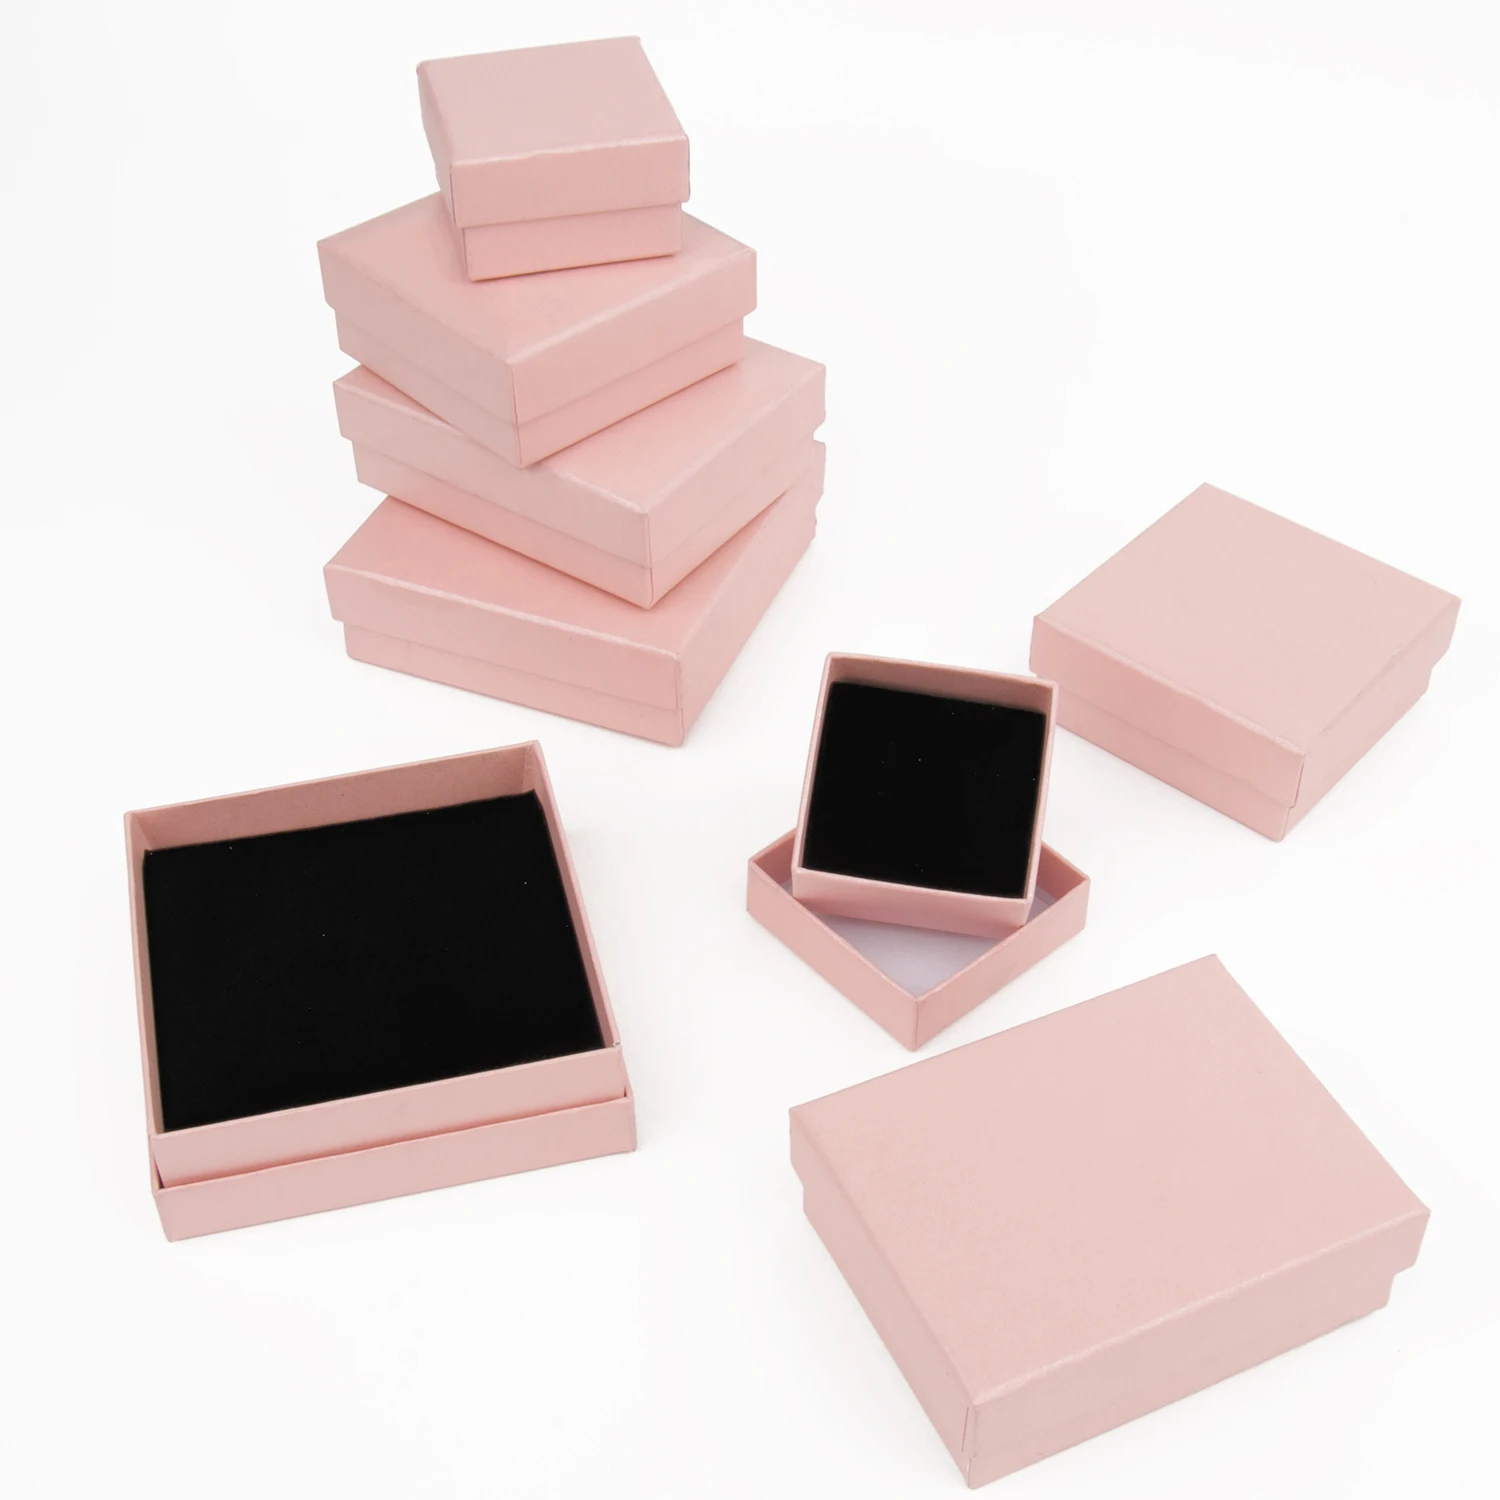 1шт Розовый ящик из тонкой крафт-бумаги, Подарочная упаковка для ювелирных изделий, коробки, Поздравительная открытка, Ожерелье, браслет, Упаковочная коробка, Аксессуары